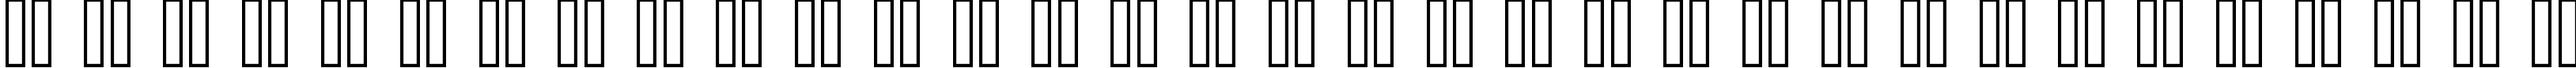 Пример написания русского алфавита шрифтом GuadalupeDos